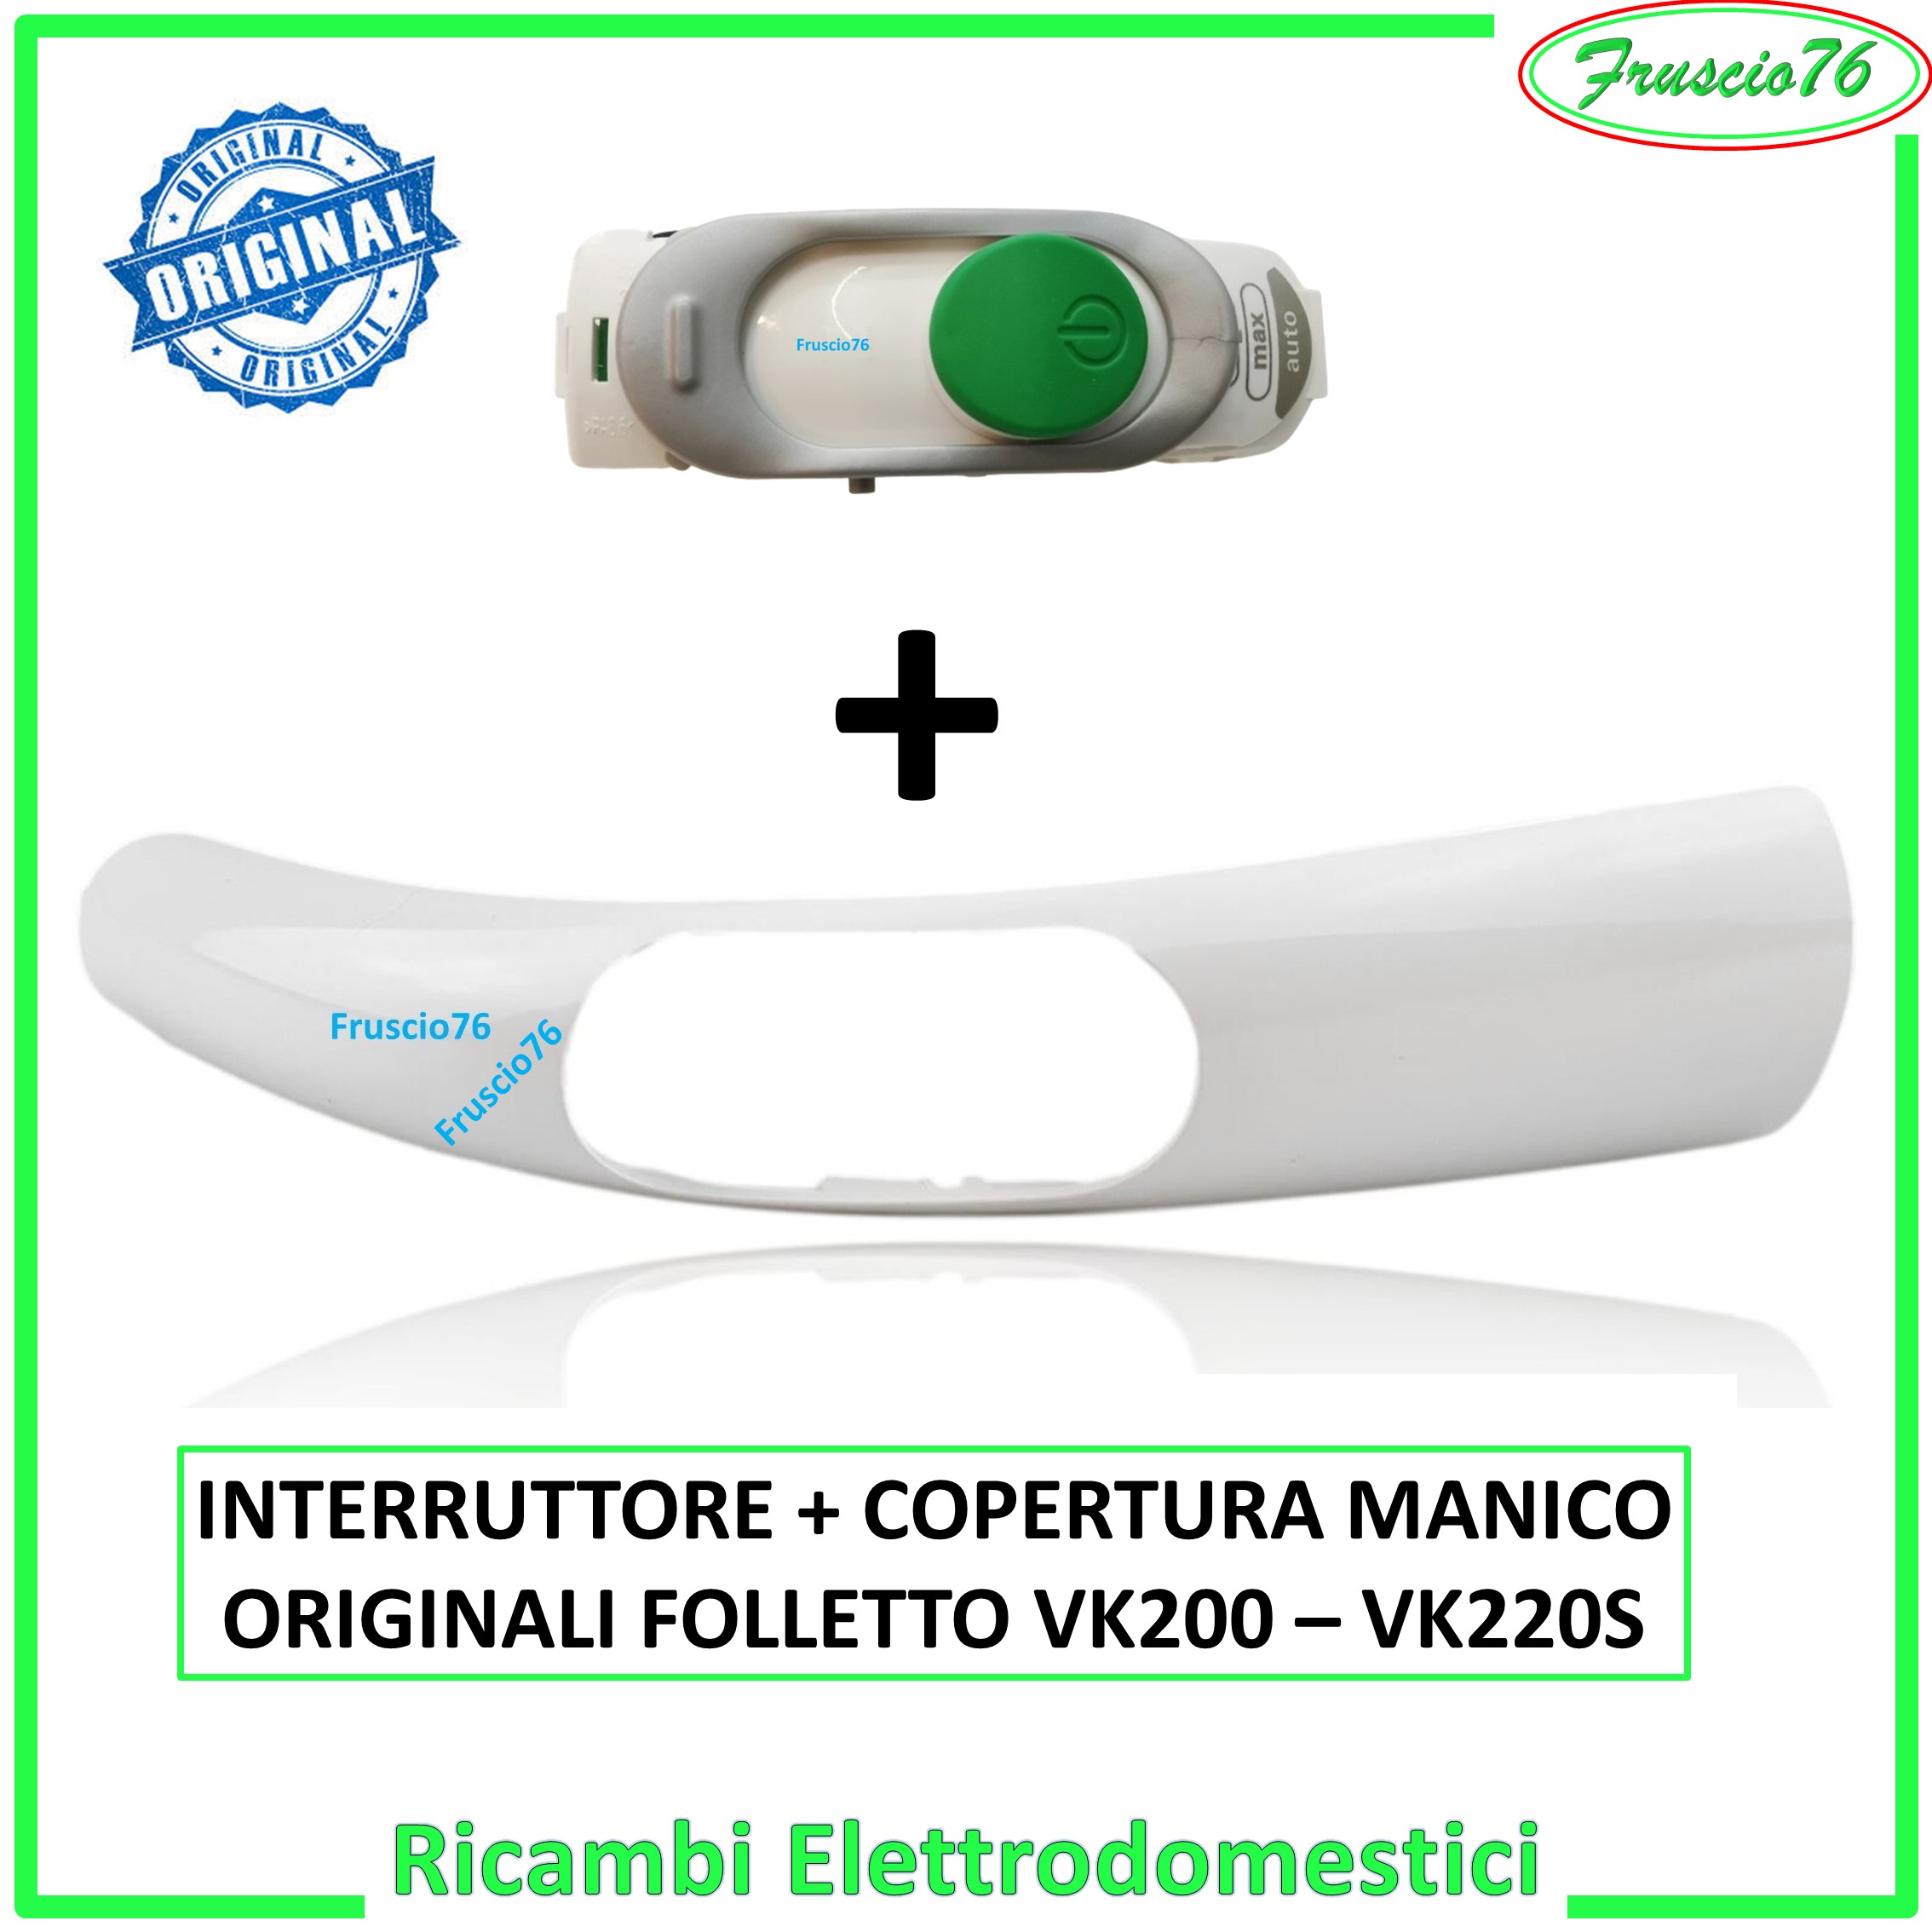 Copertura Manico Impugnatura + Interruttore Folletto VK200 VK220S Vorwerk Originali Cod. 32415 e Cod. 32414